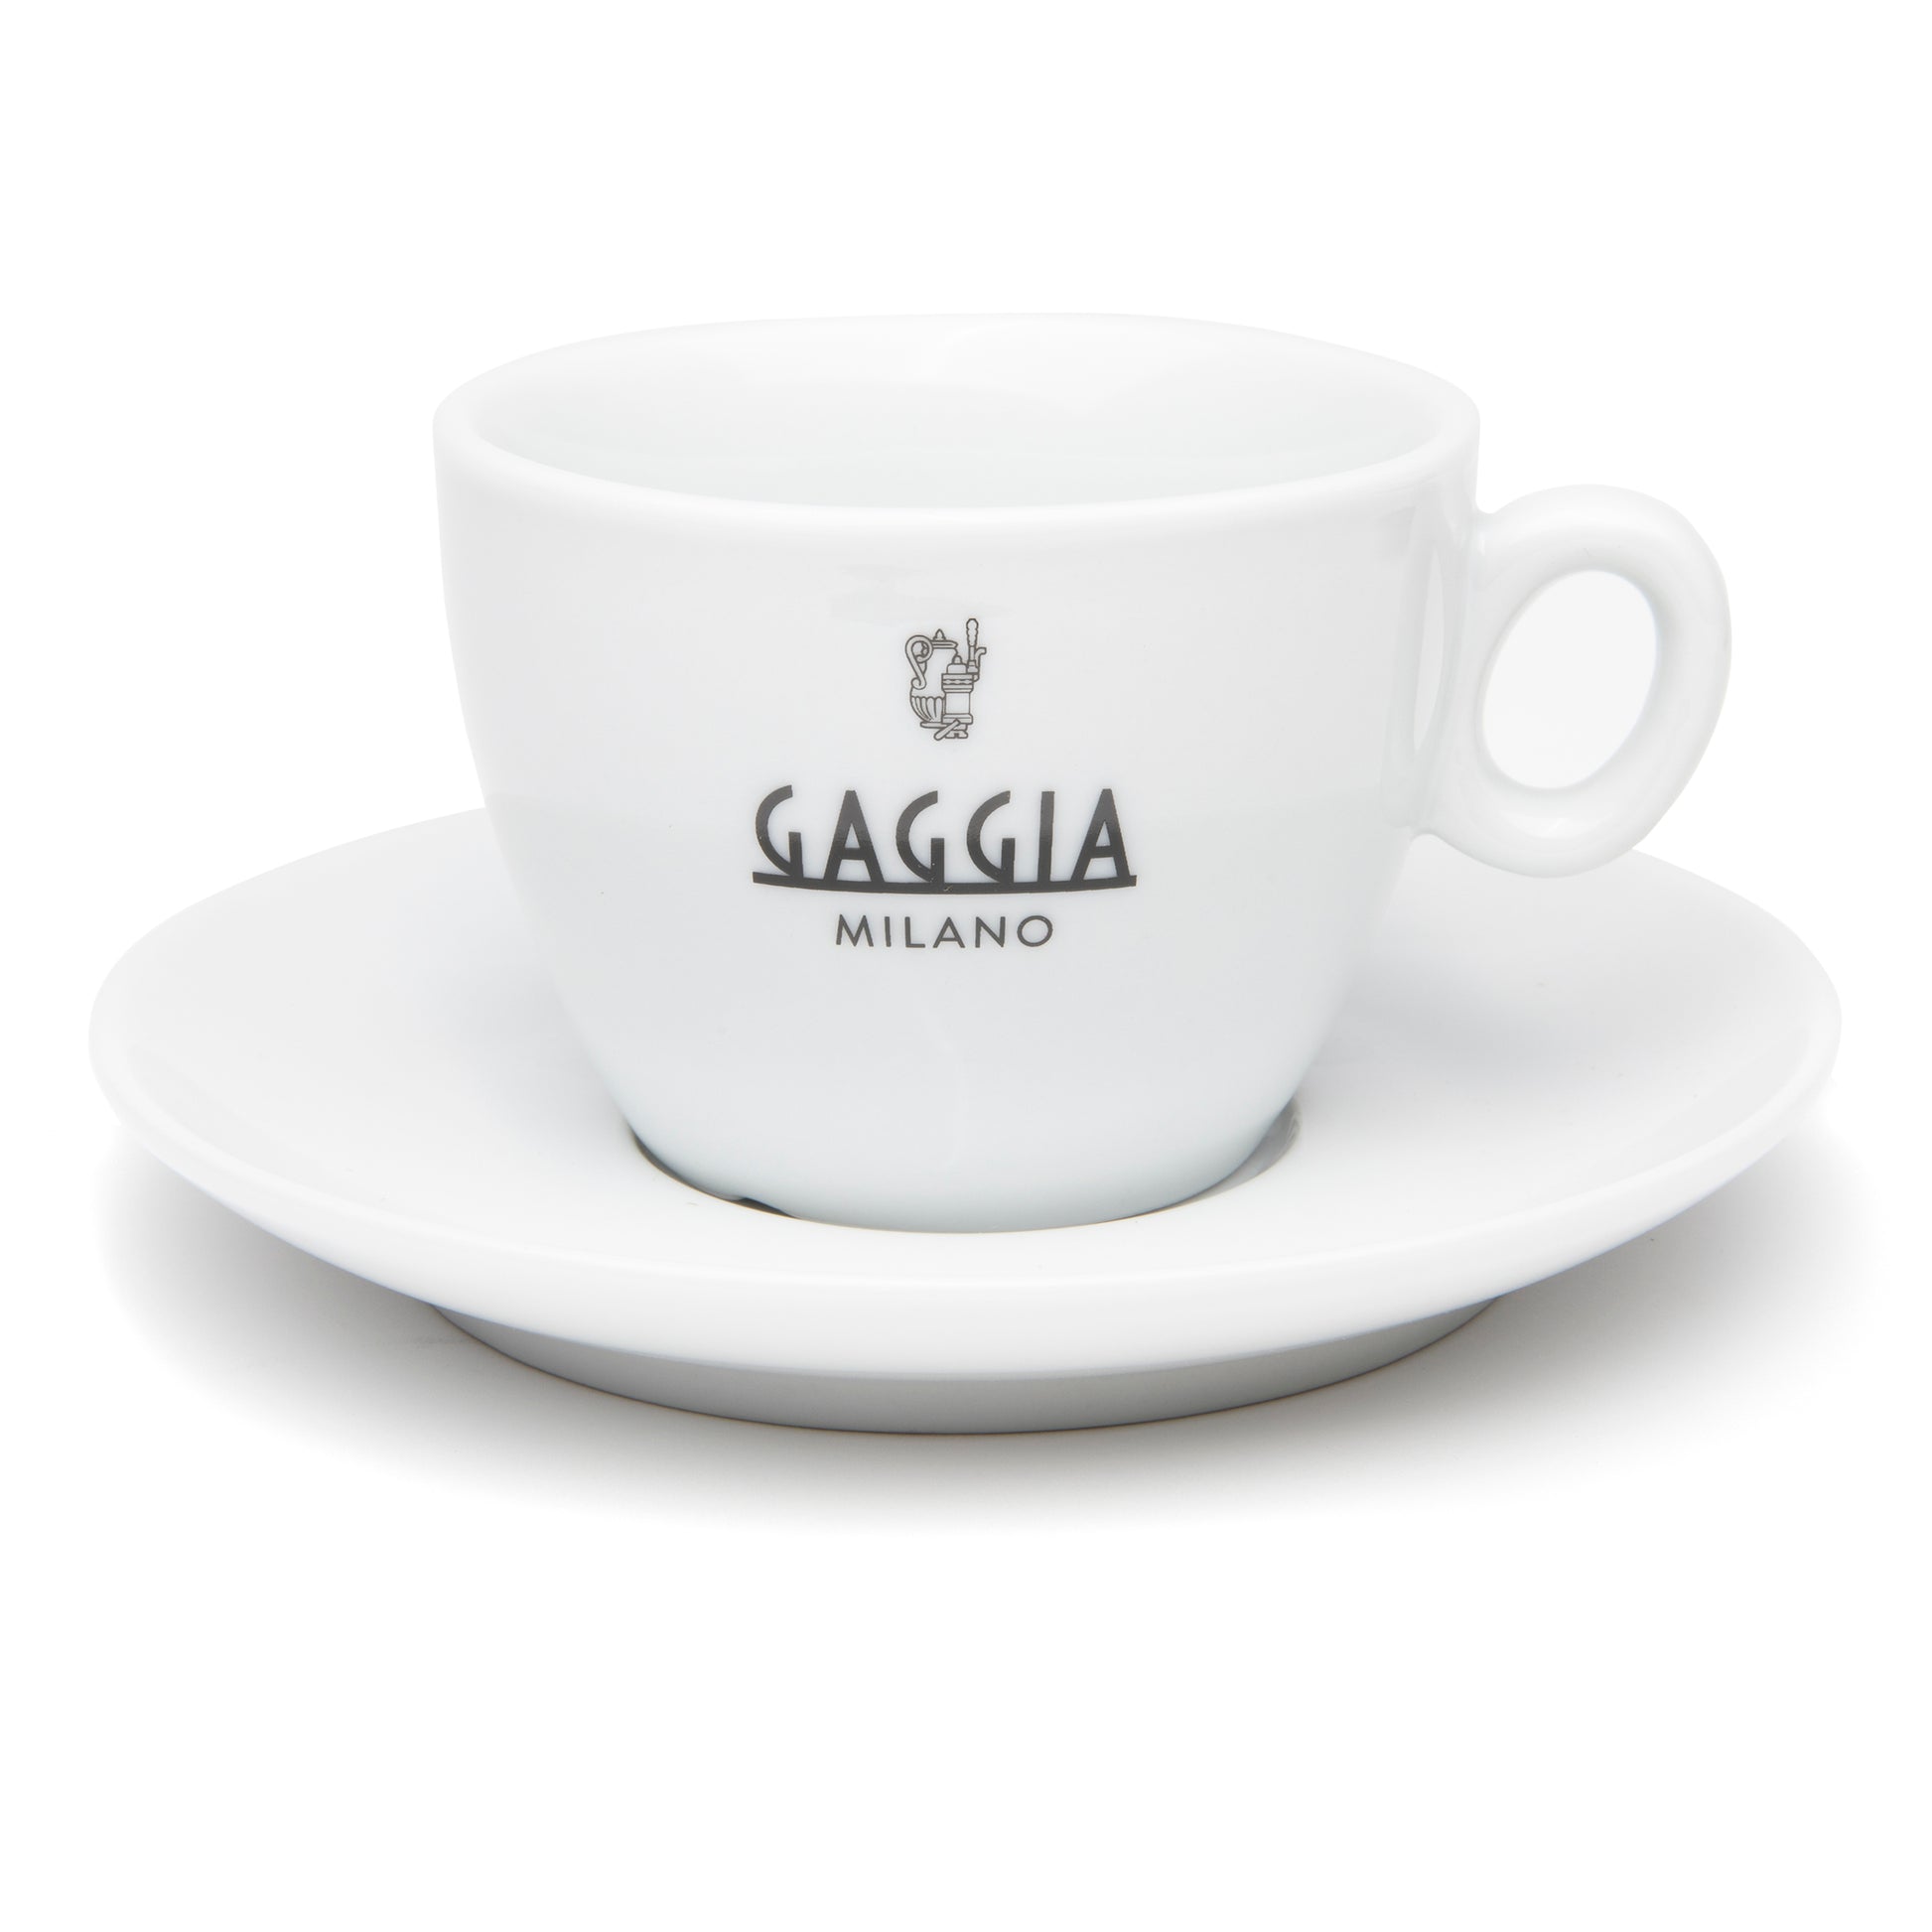 Gaggia Glass Milk Carafe – Whole Latte Love